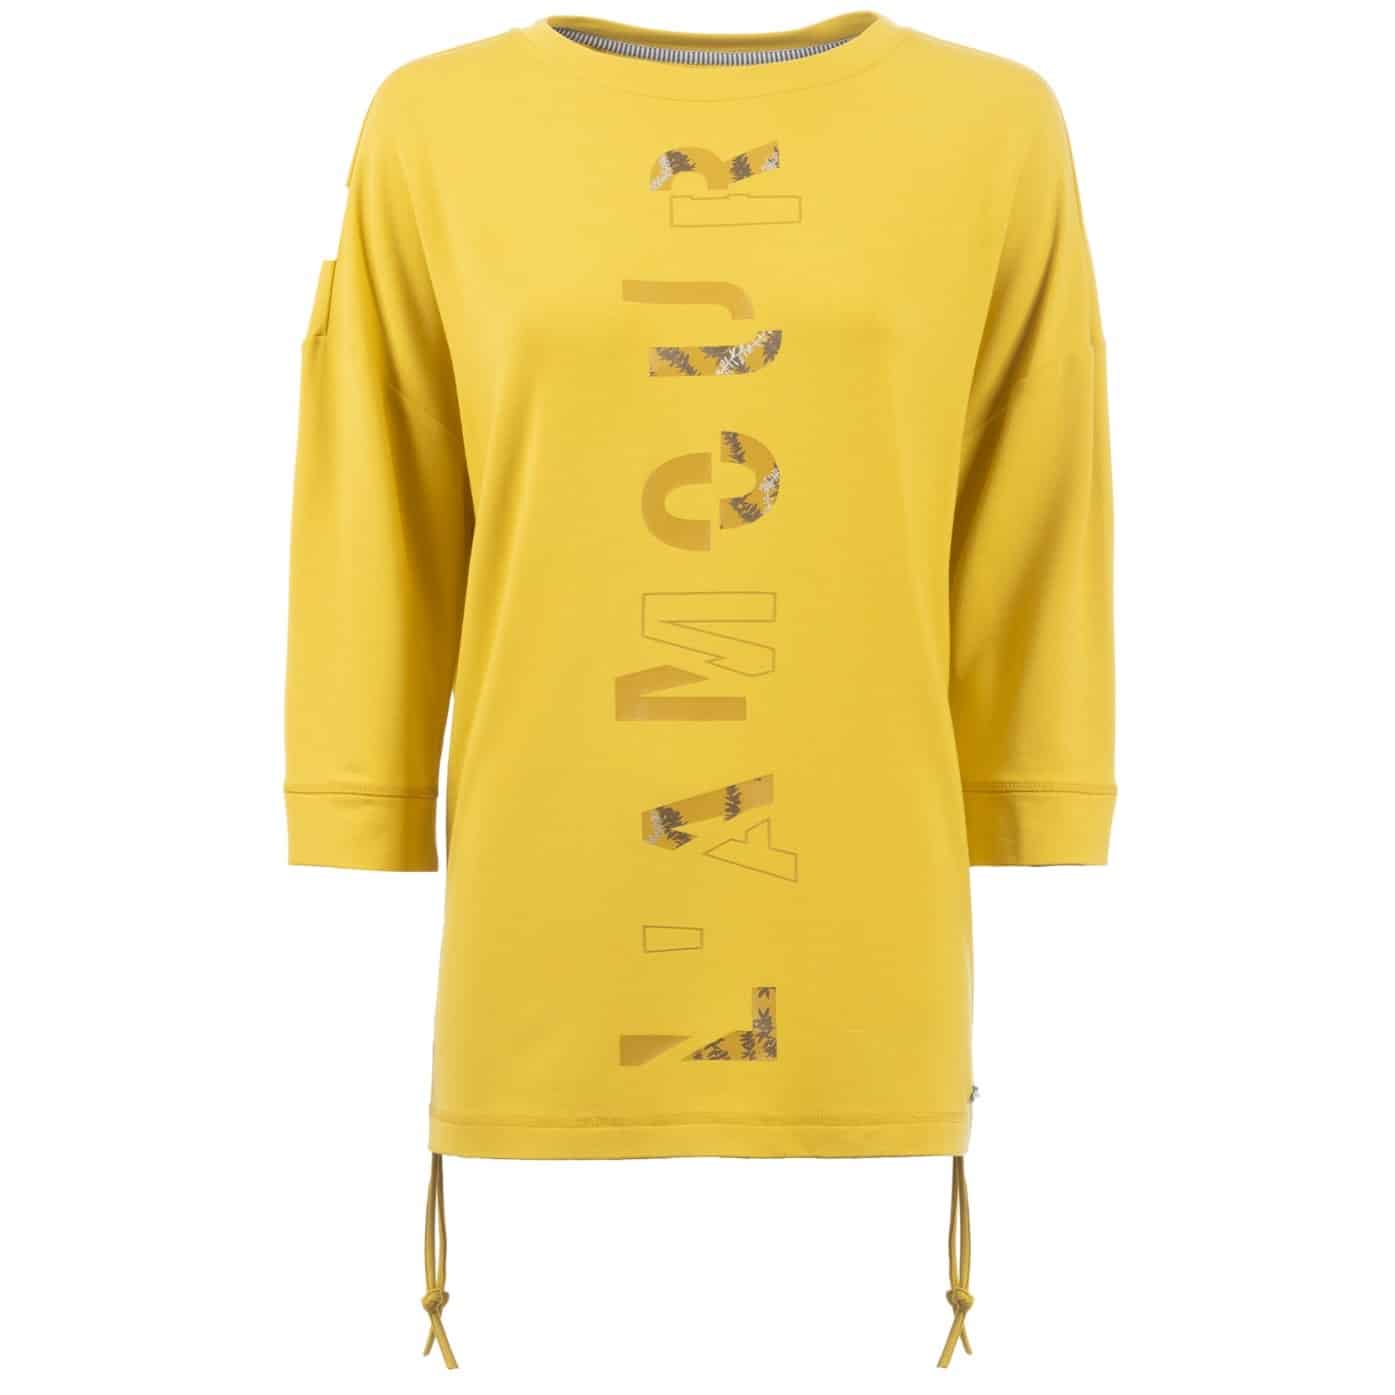 Leichtes Sweatshirt für Damen mit 3/4 Arm in der Farbe Curry von S'questo Artikel 6210-503614 bei Mode Sabine Lemke in Winnenden im Onlineshop und in der Boutique